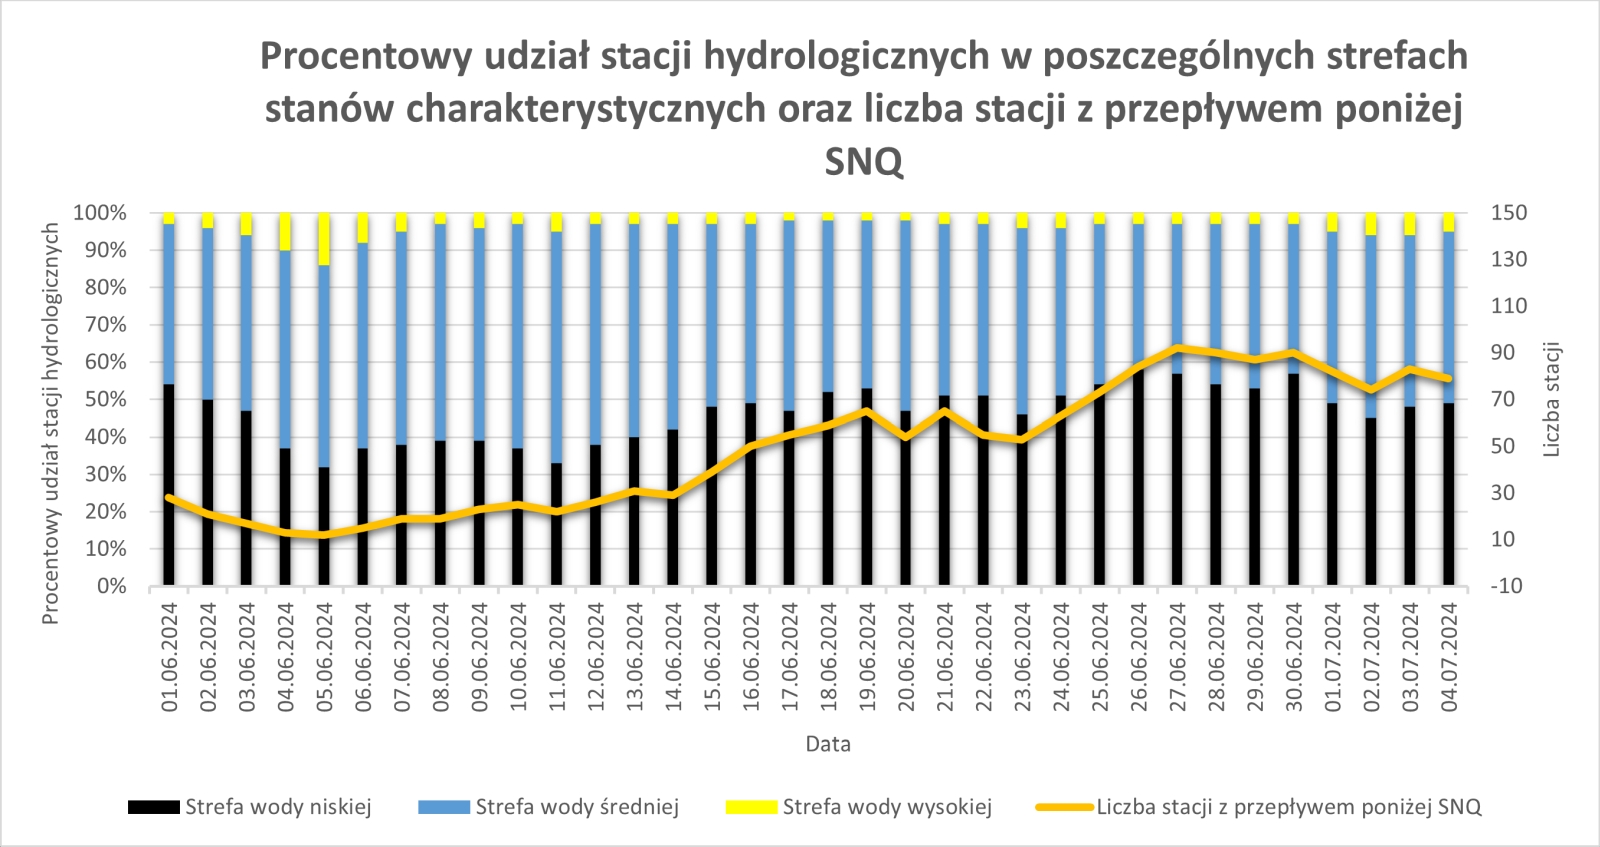 Procentowy udział stacji hydrologicznych w poszczególnych strefach stanów charakterystycznych oraz liczba stacji z przepływem poniżej SNQ.